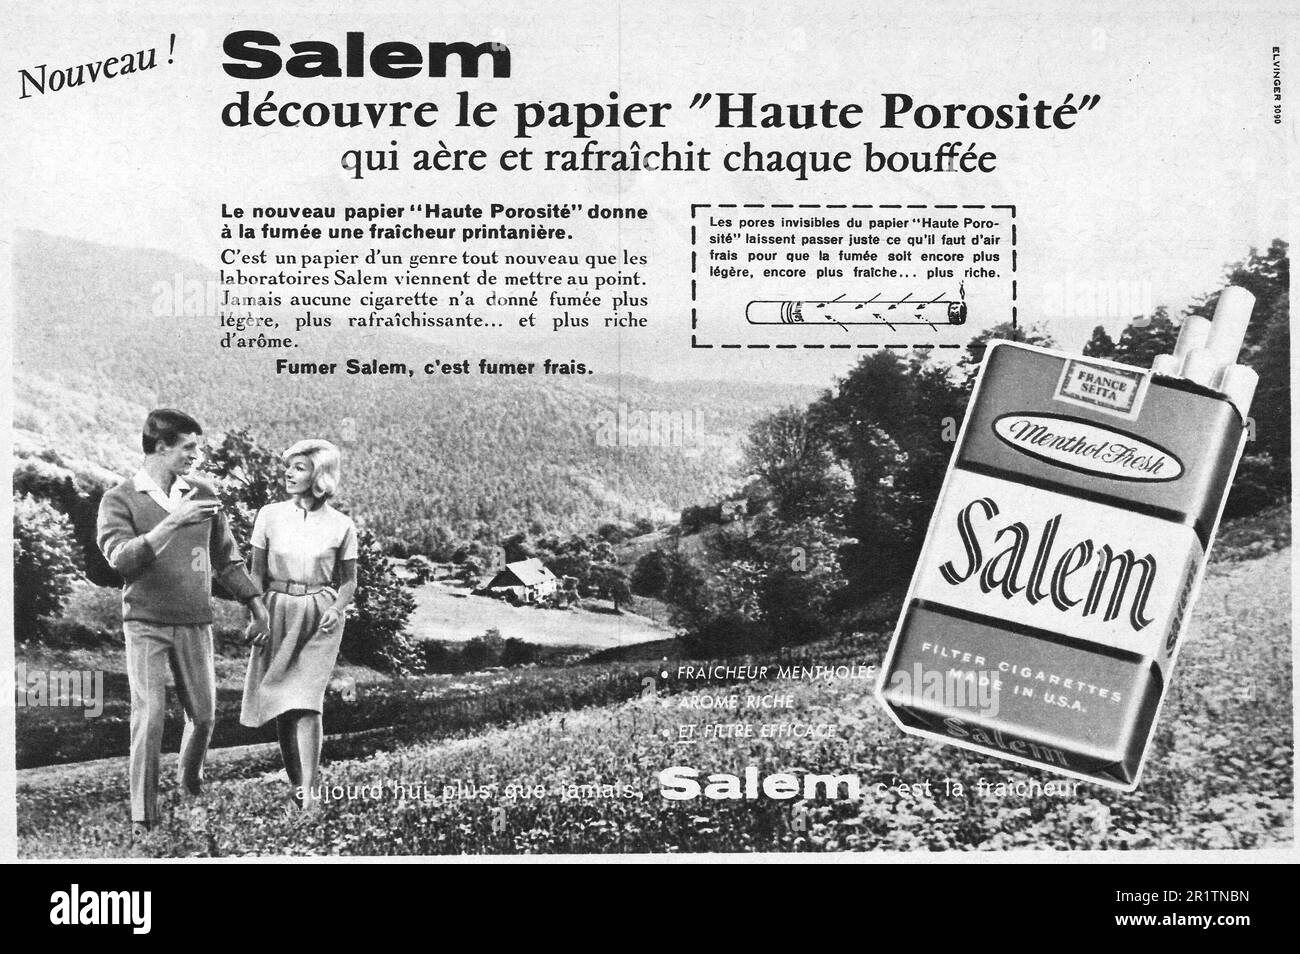 Salem cigarettes advert, haute porosité papier French print ad, 1959 Stock Photo